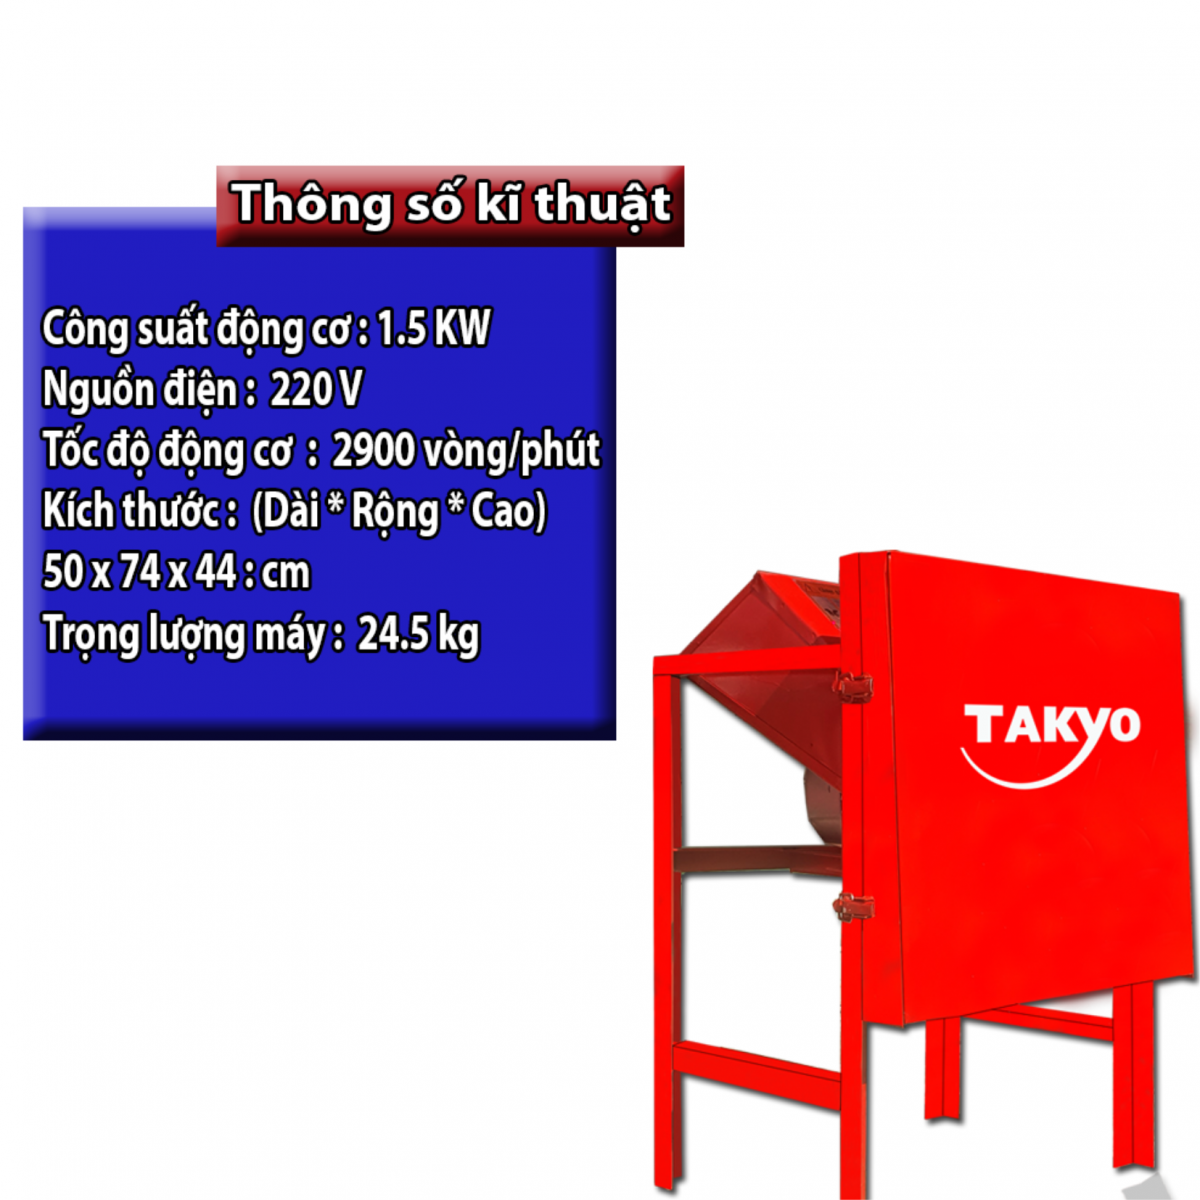 Thông số kỹ thuật của máy thái chuối Takyo tk 15